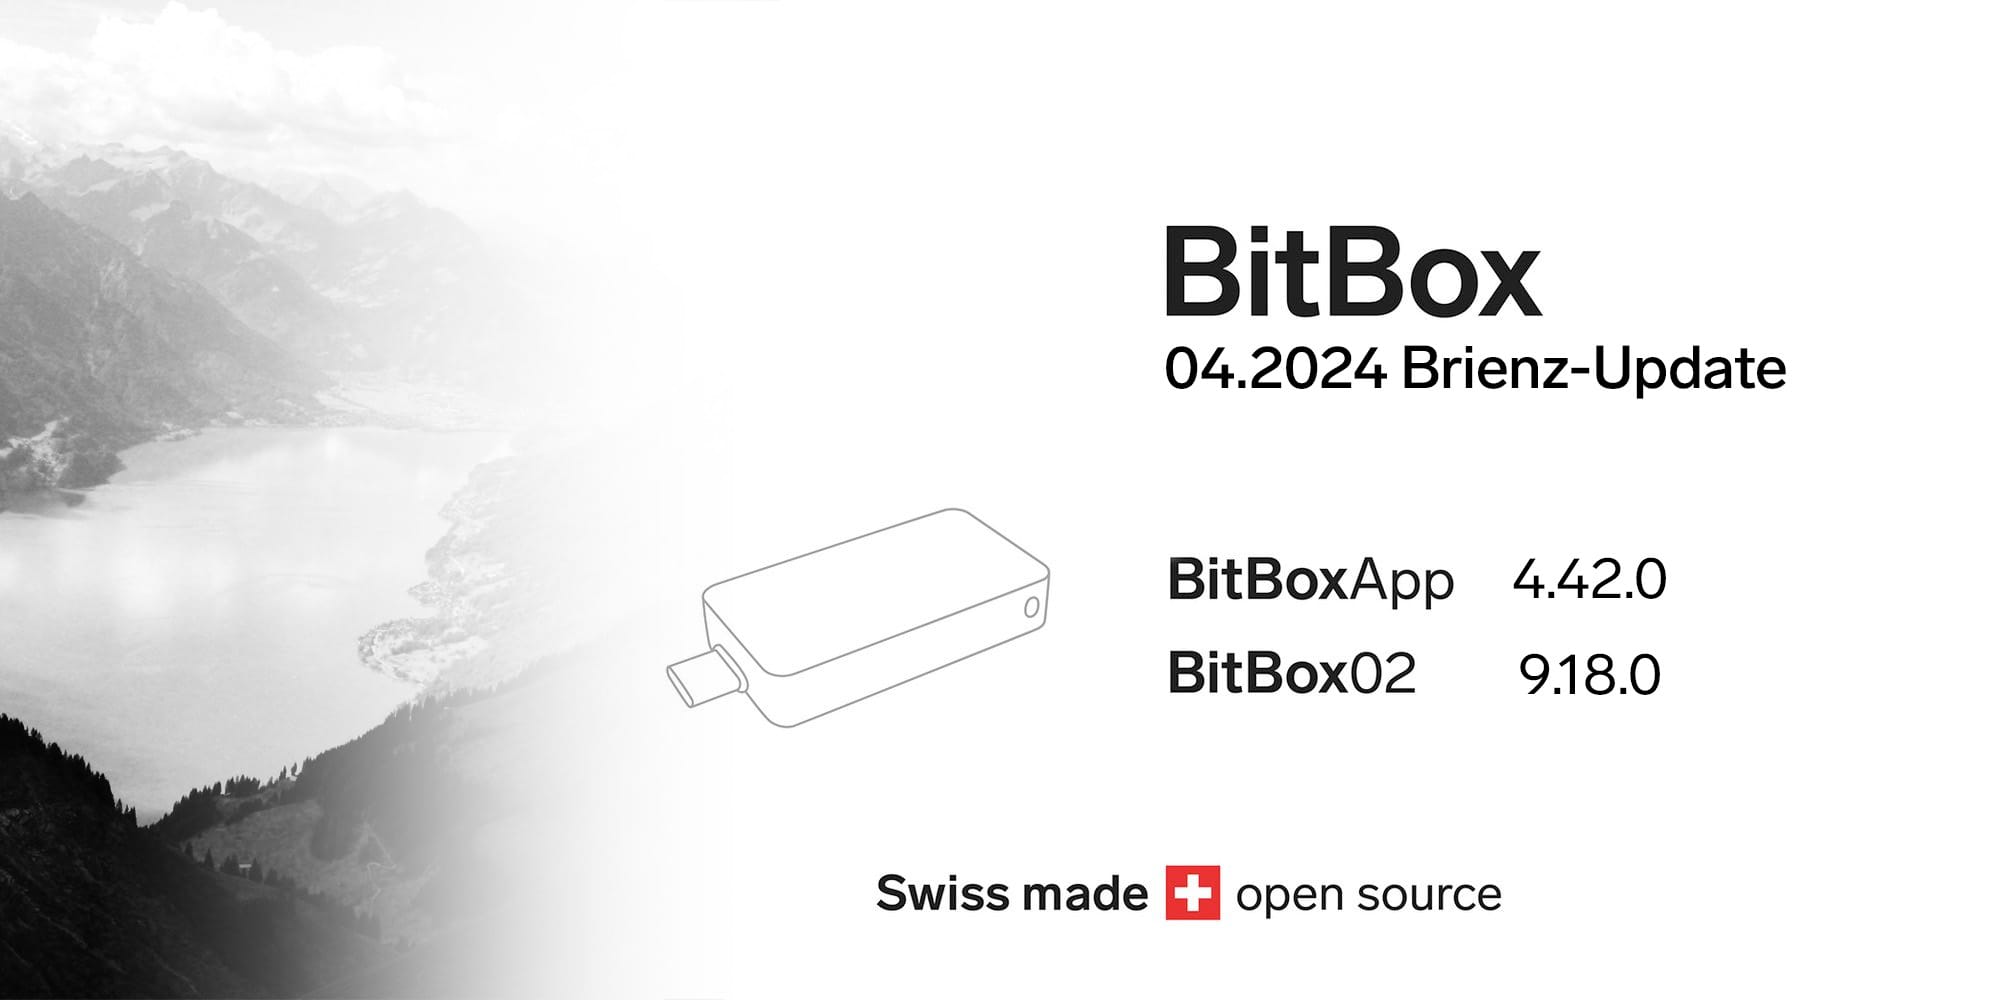 BitBox 04.2024 Brienz-Update